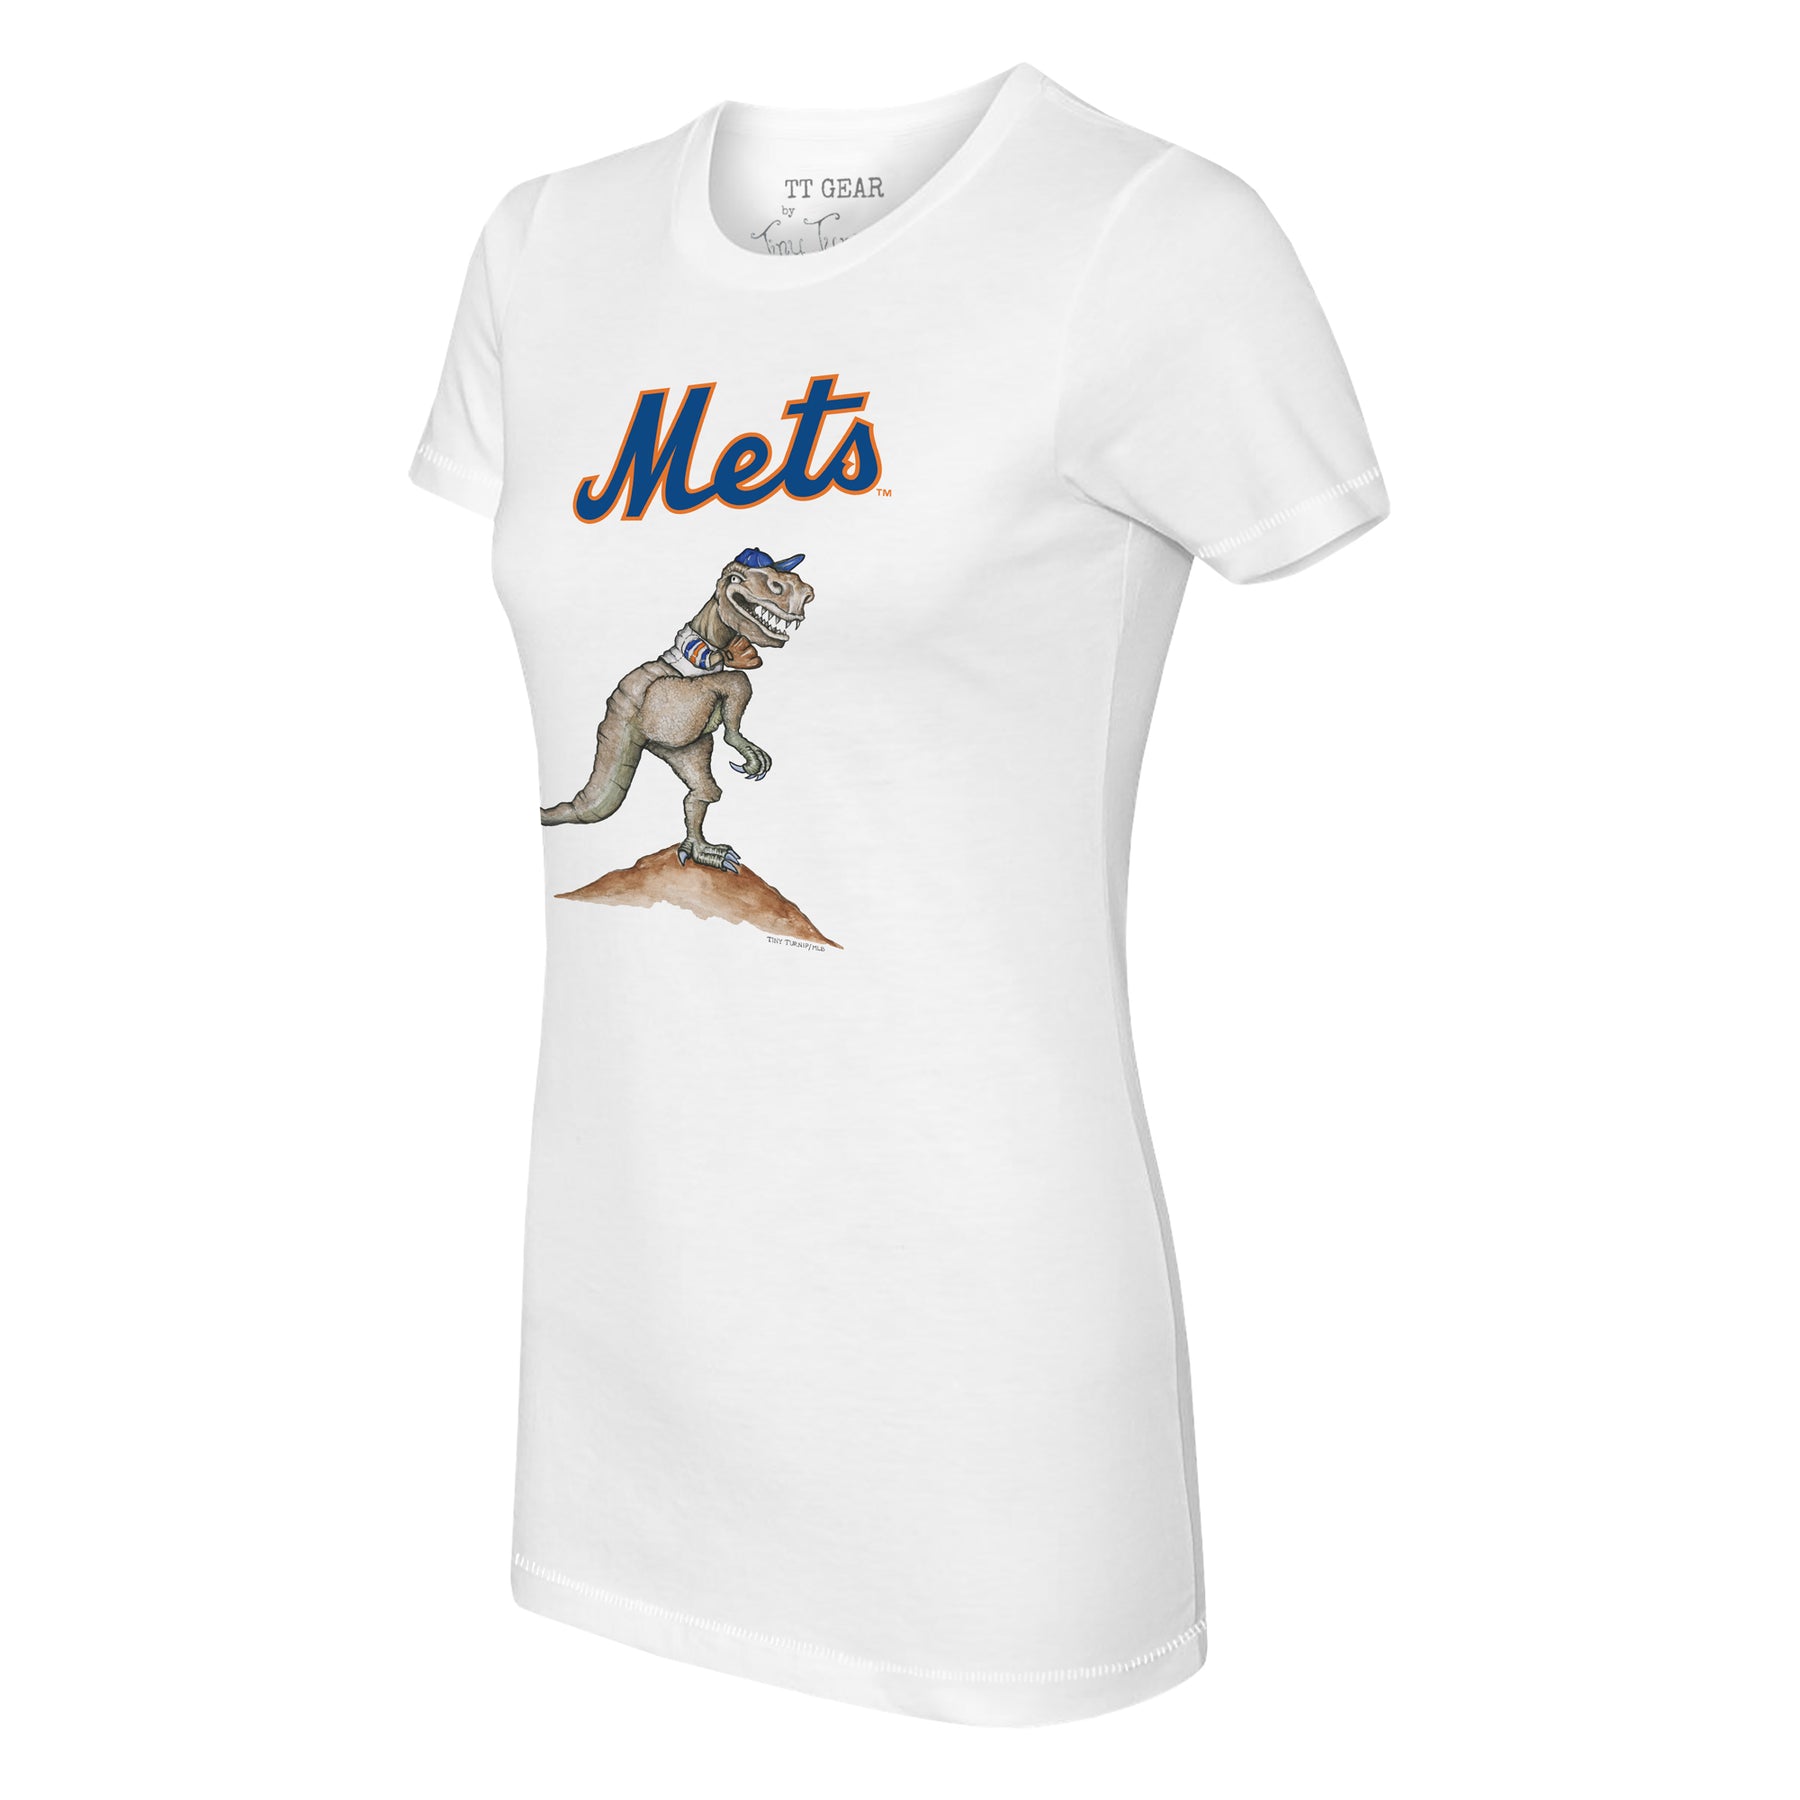 Tiny Turnip New York Mets Sundae Helmet Tee Shirt Women's XL / White